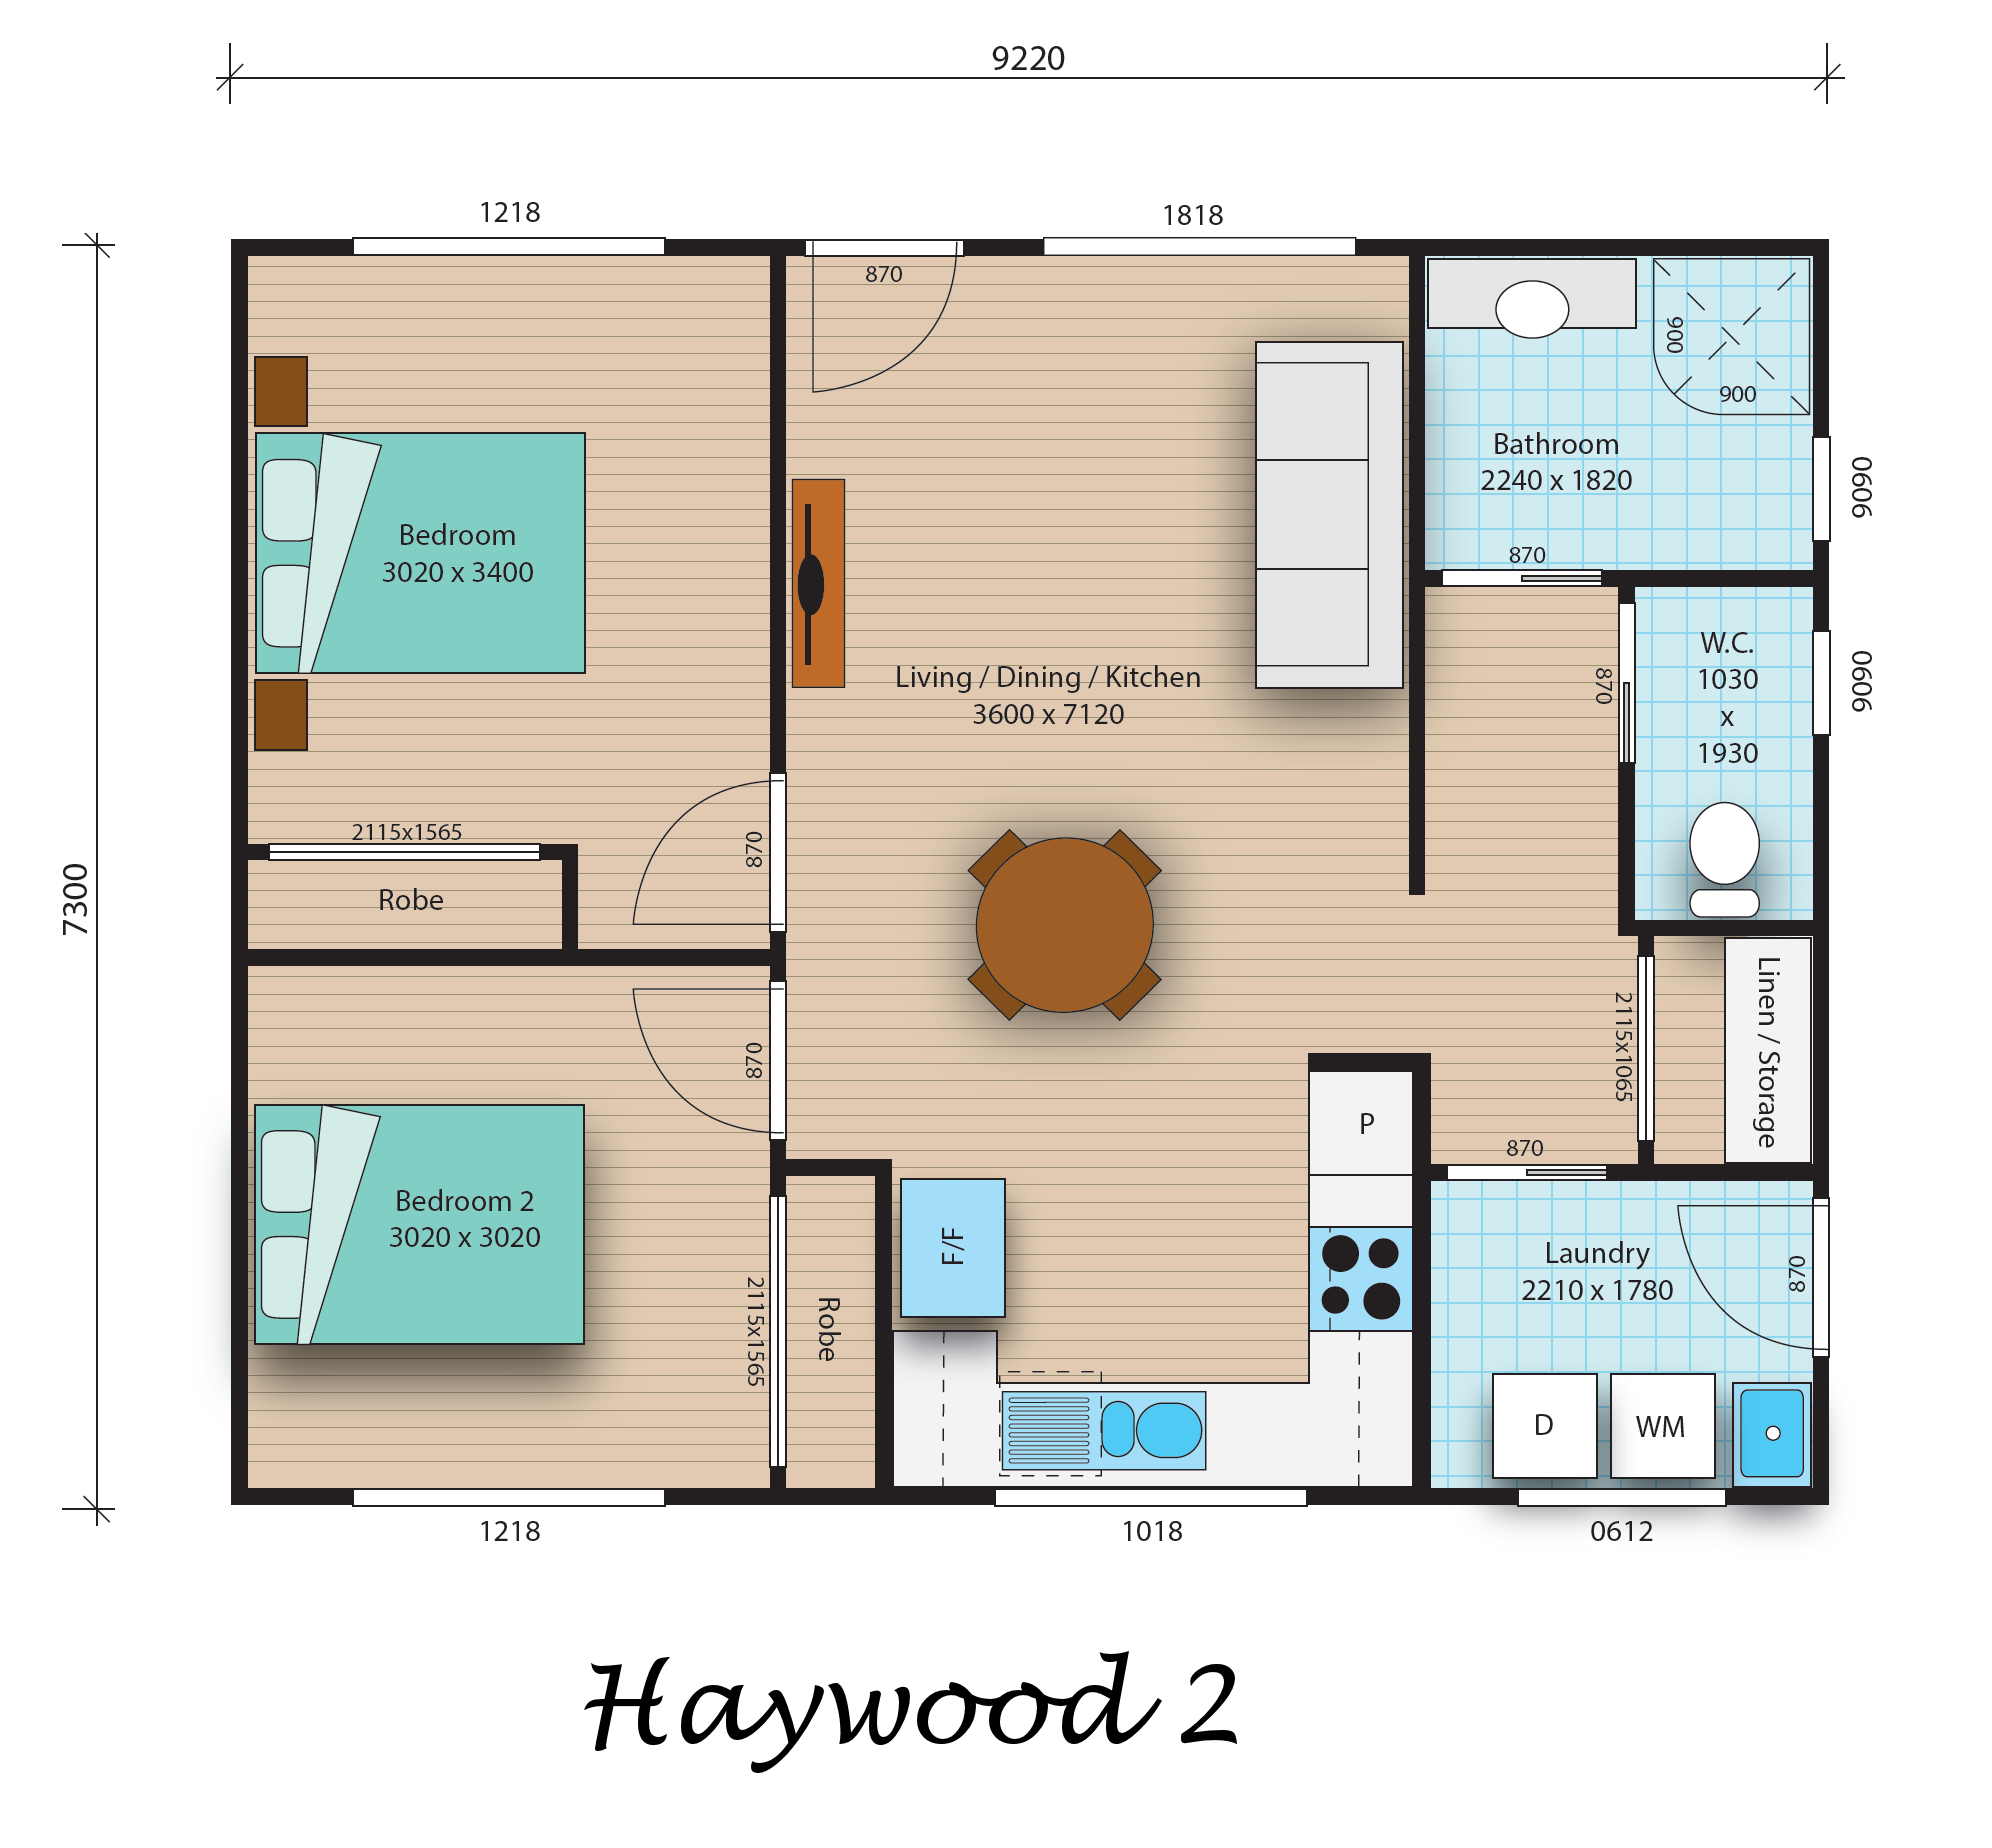 Haywood 2 floorplan image